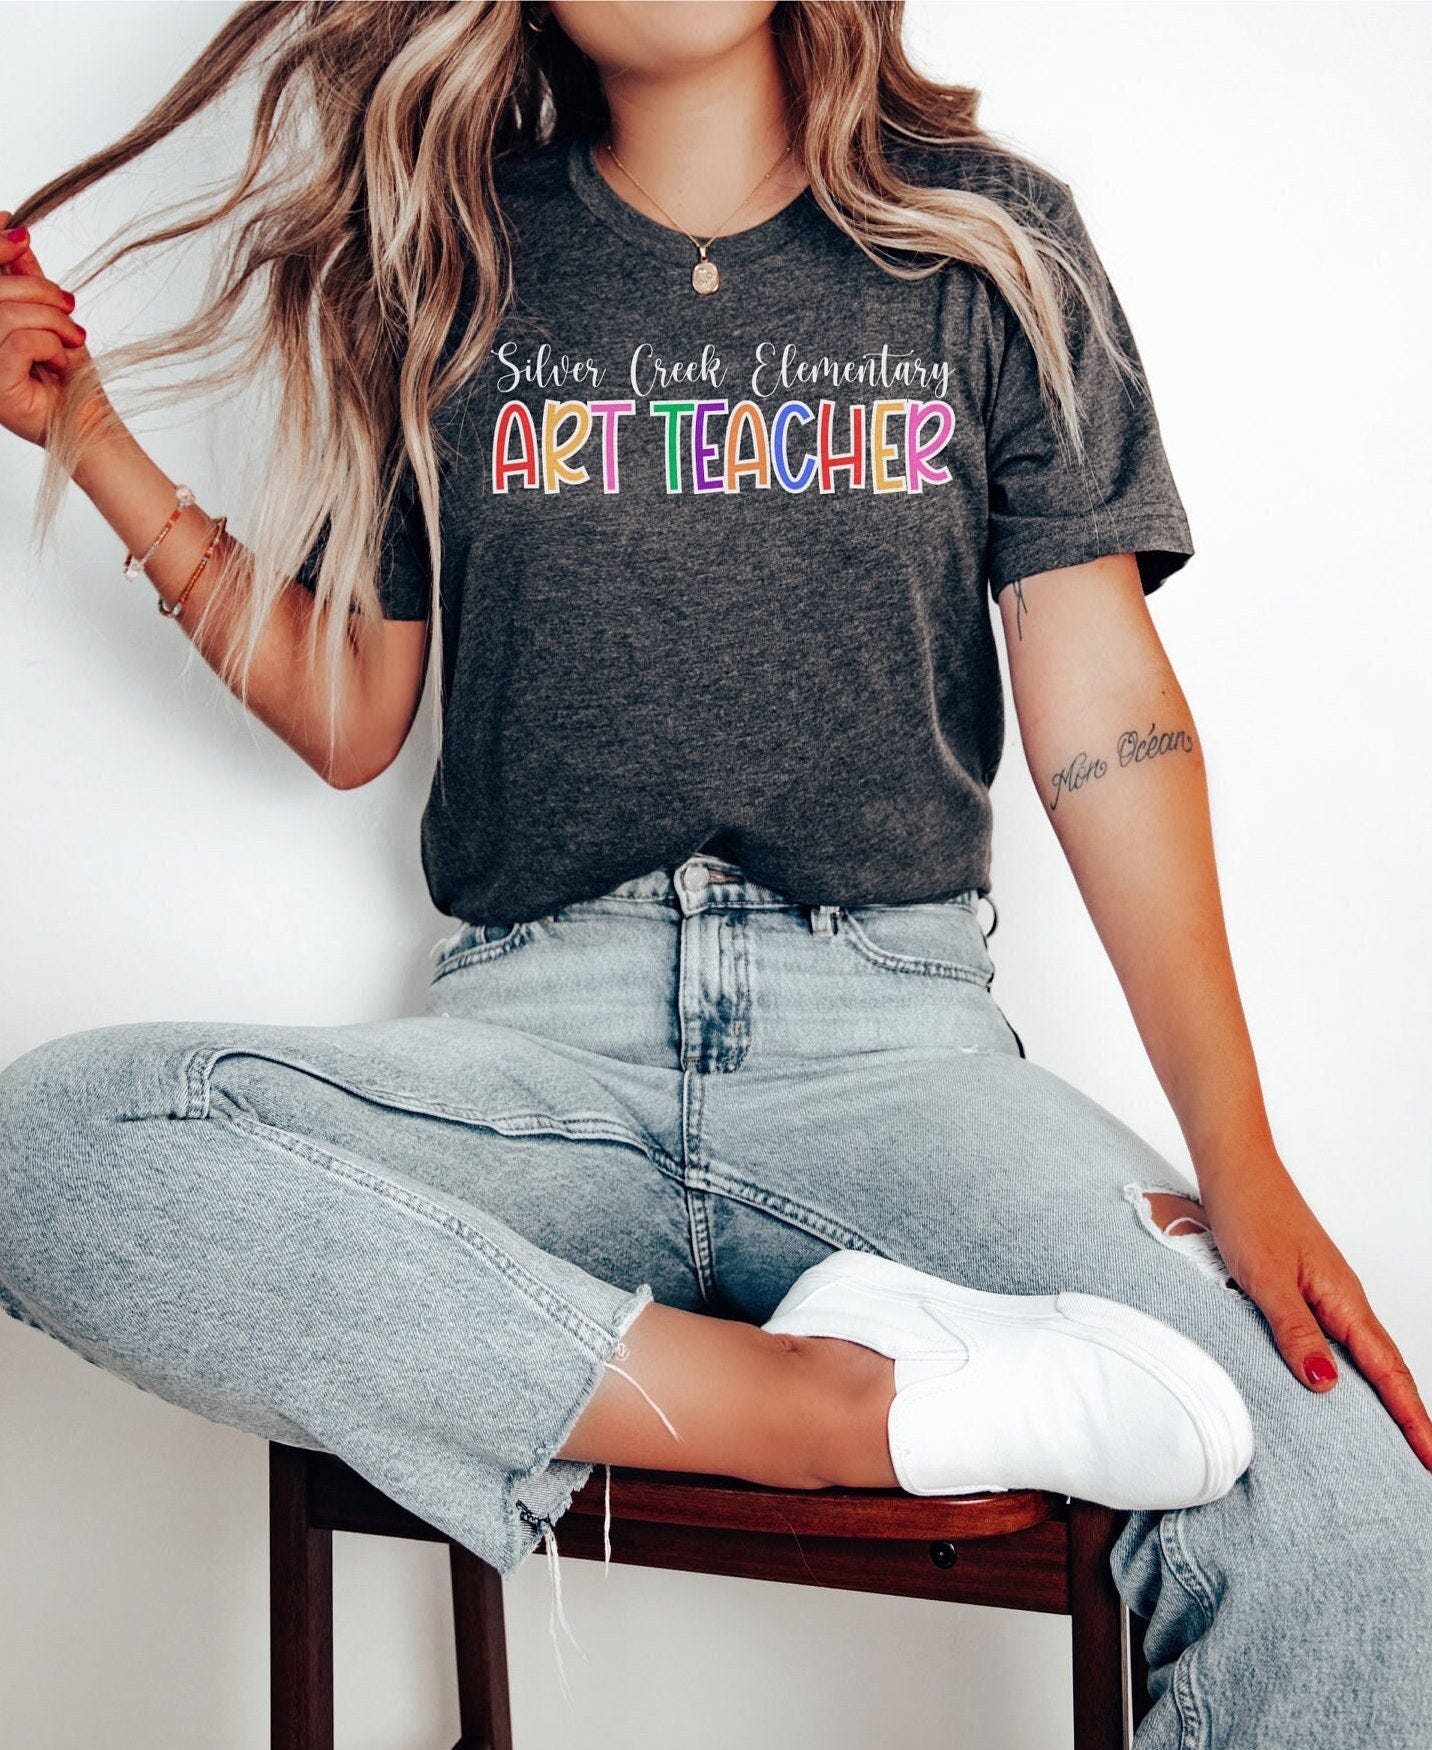 Custom Art Teacher Shirt, Personalized Art Teacher Shirt, Art Teacher Shirt with School Name, Art Teacher Shirt, Art Teacher Gift, Art Shirt